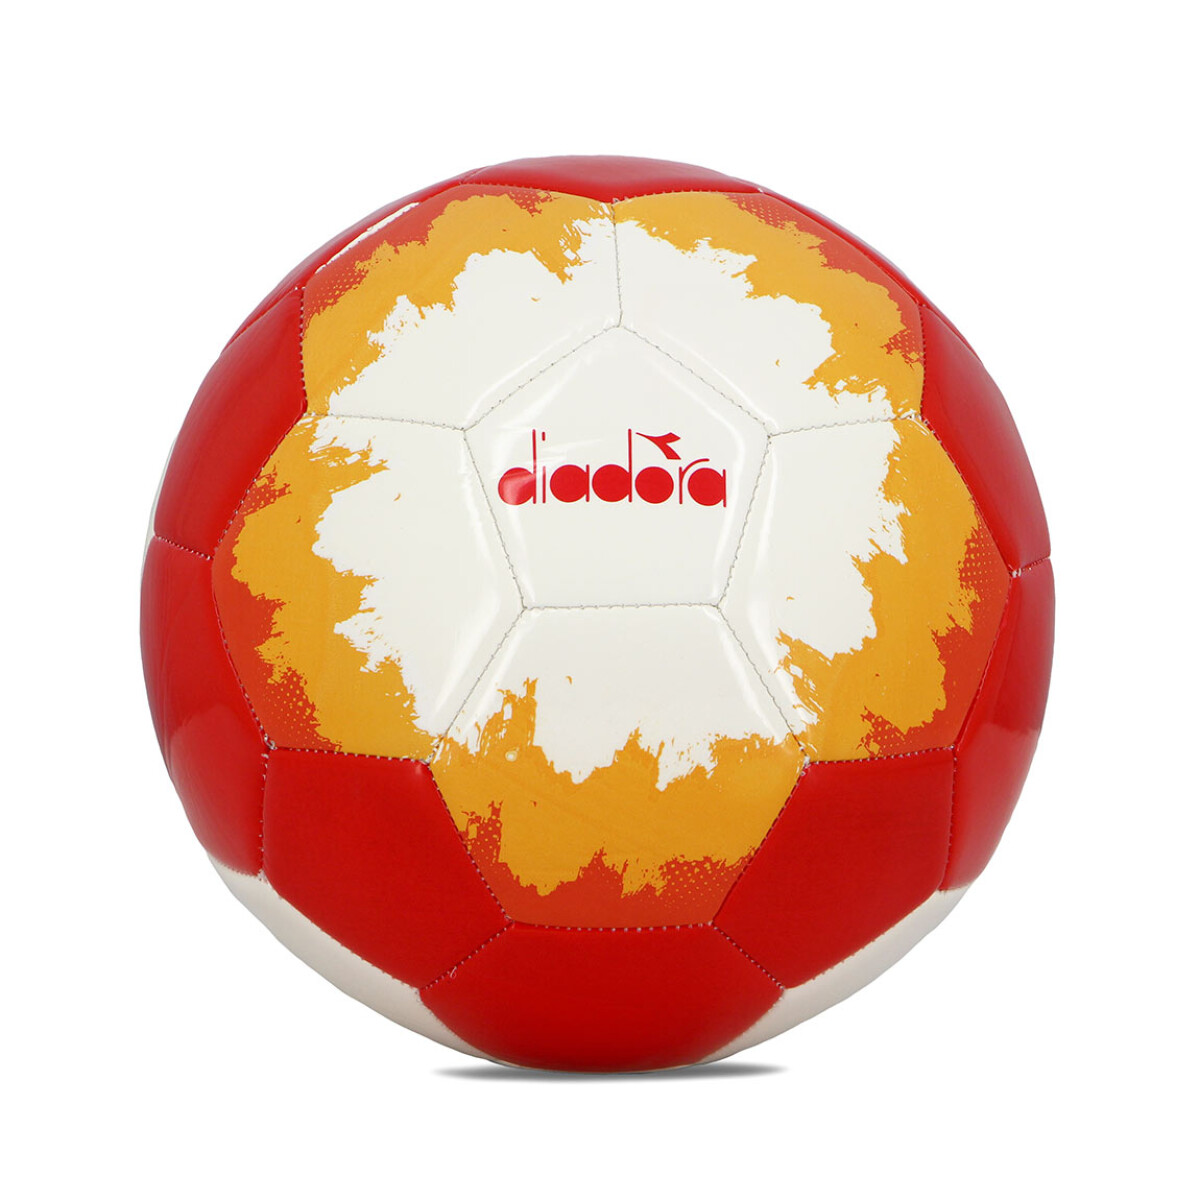 Diadora Pelota Futbol Doha Ii N°5 - Blanco-rojo 